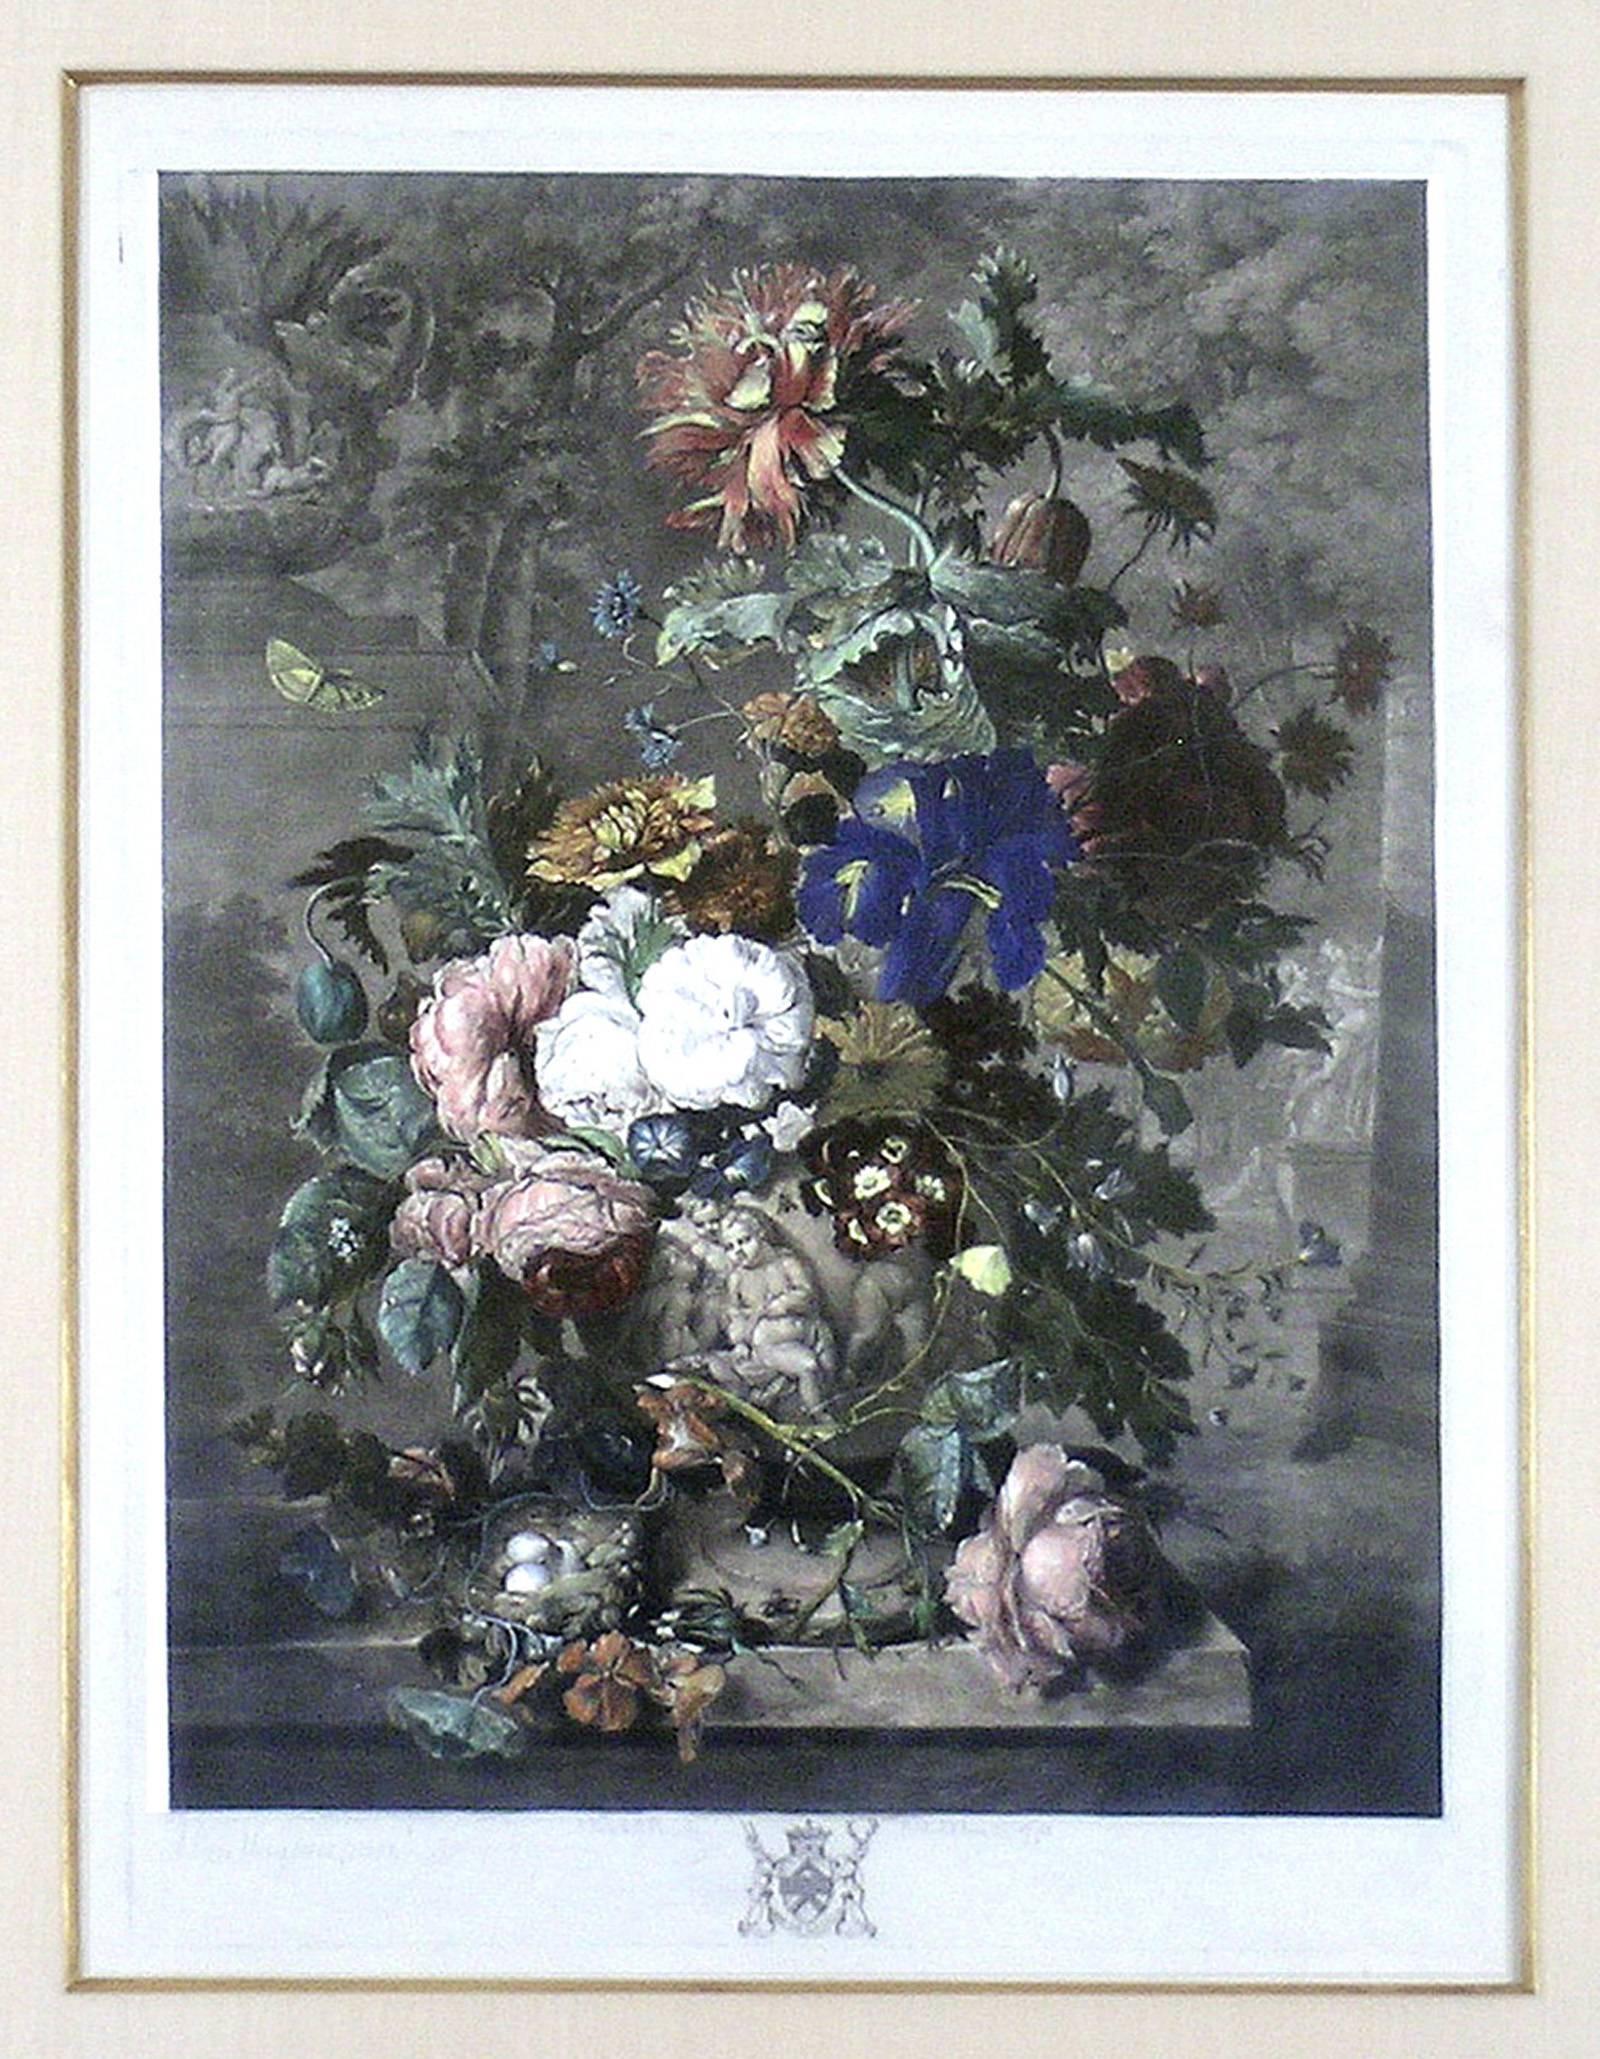 Un Pieces de fruit - Print de Jan Van Huysum